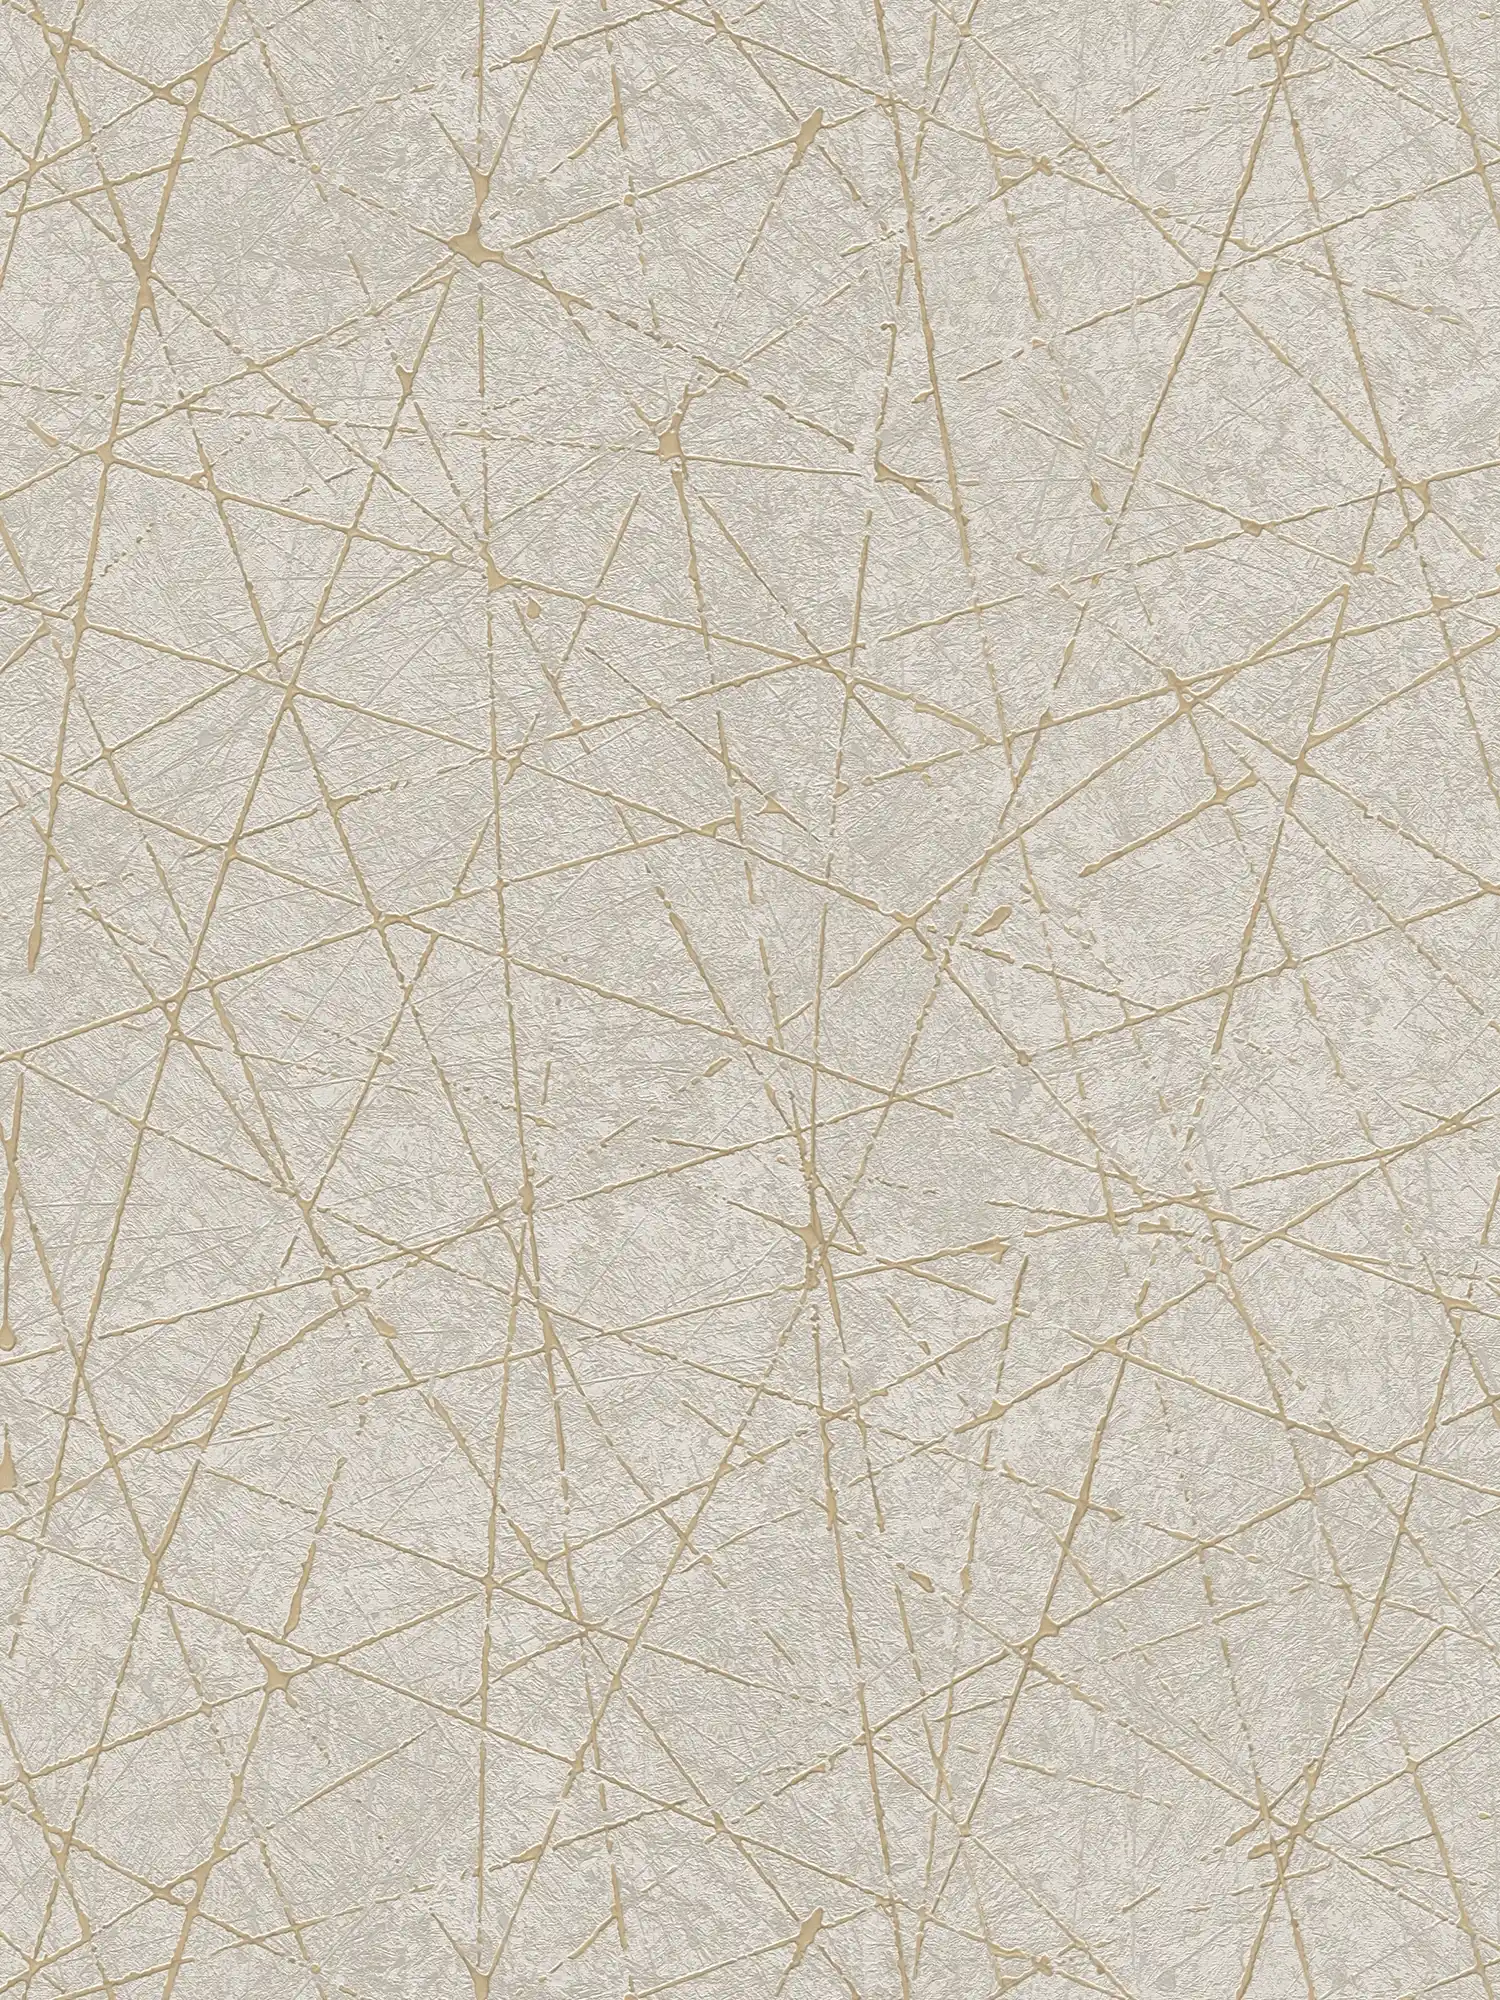         Vliesbehang met grafische lijnen & metaaleffect - crème, grijs, goud
    